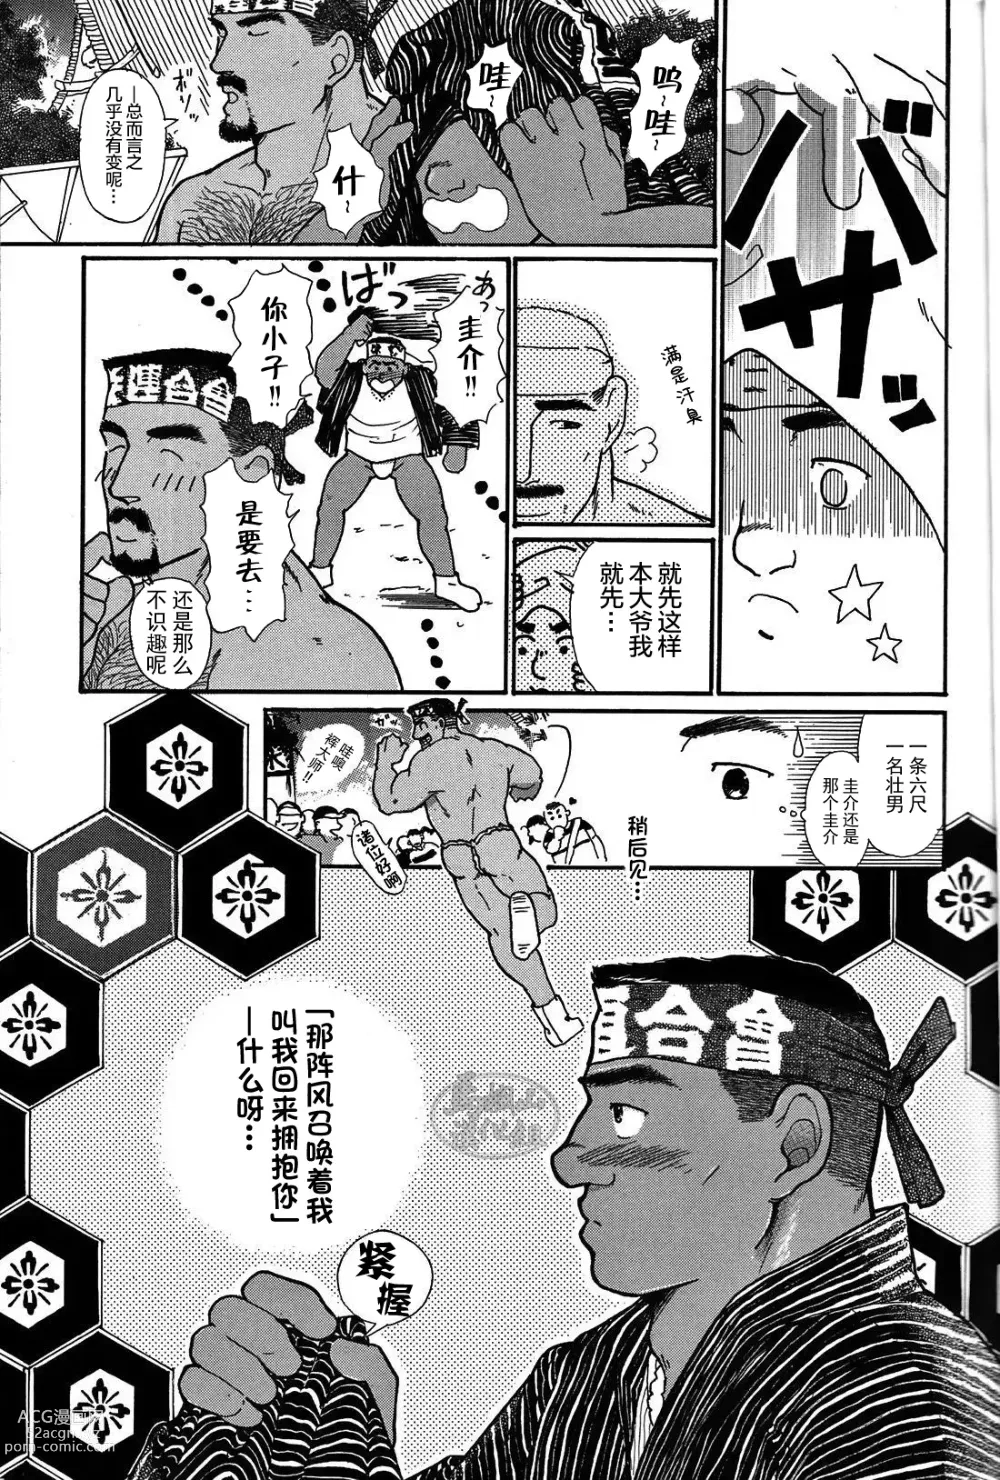 Page 8 of manga 纯情!! 第一章 「纯情」